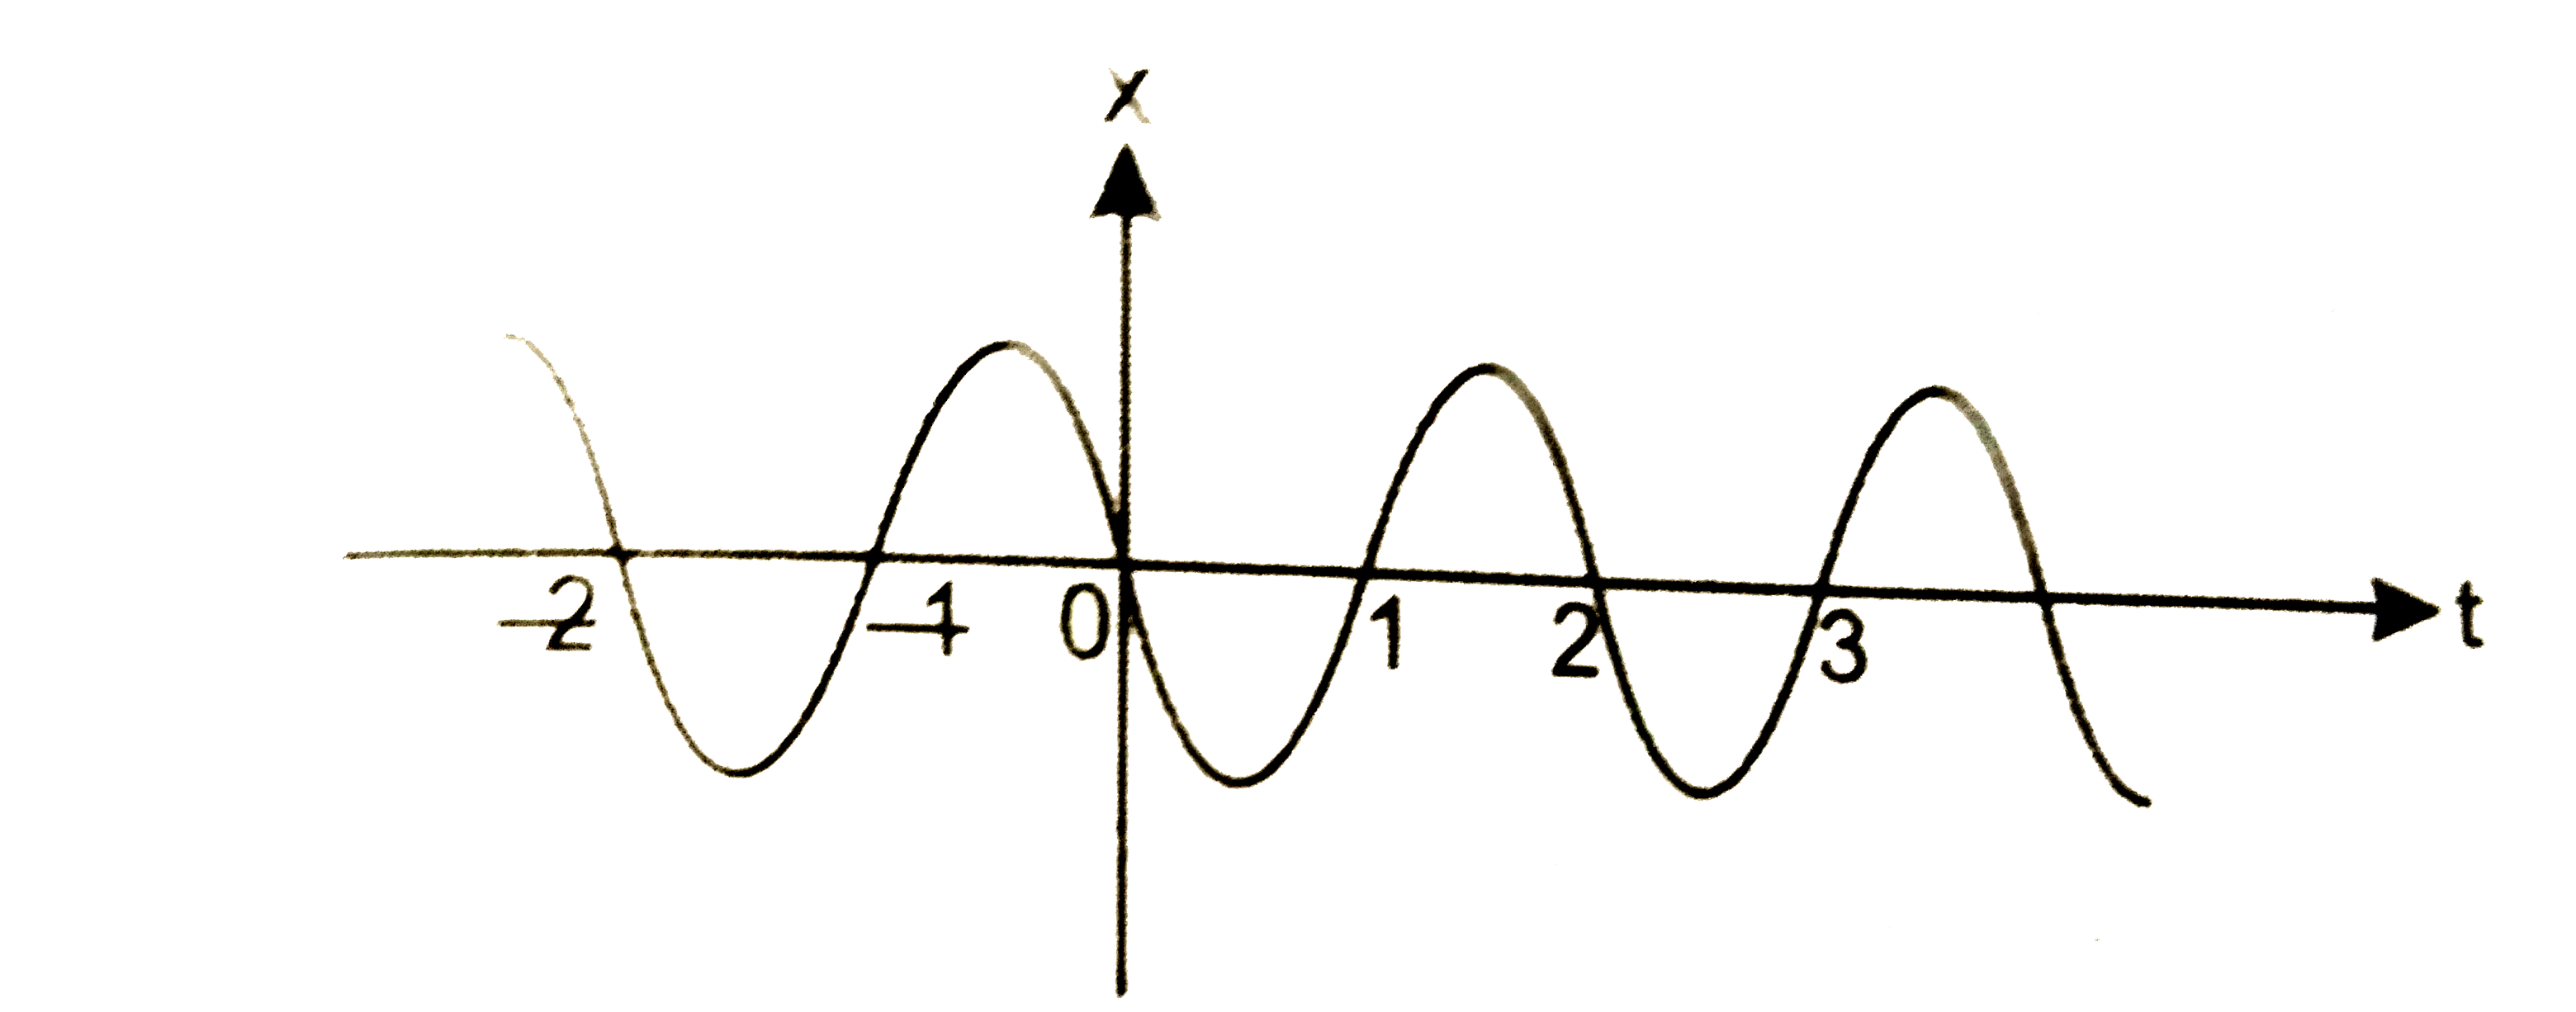 चित्र में किसी कण की एकविमीय आवर्ती गति के लिए x-t ग्राफ दिखाया गया है सम t=0.3s, 1.2s,. -1.2s पर कण के स्थिति, वेग व त्वरण के चिन्ह क्या होंगे?